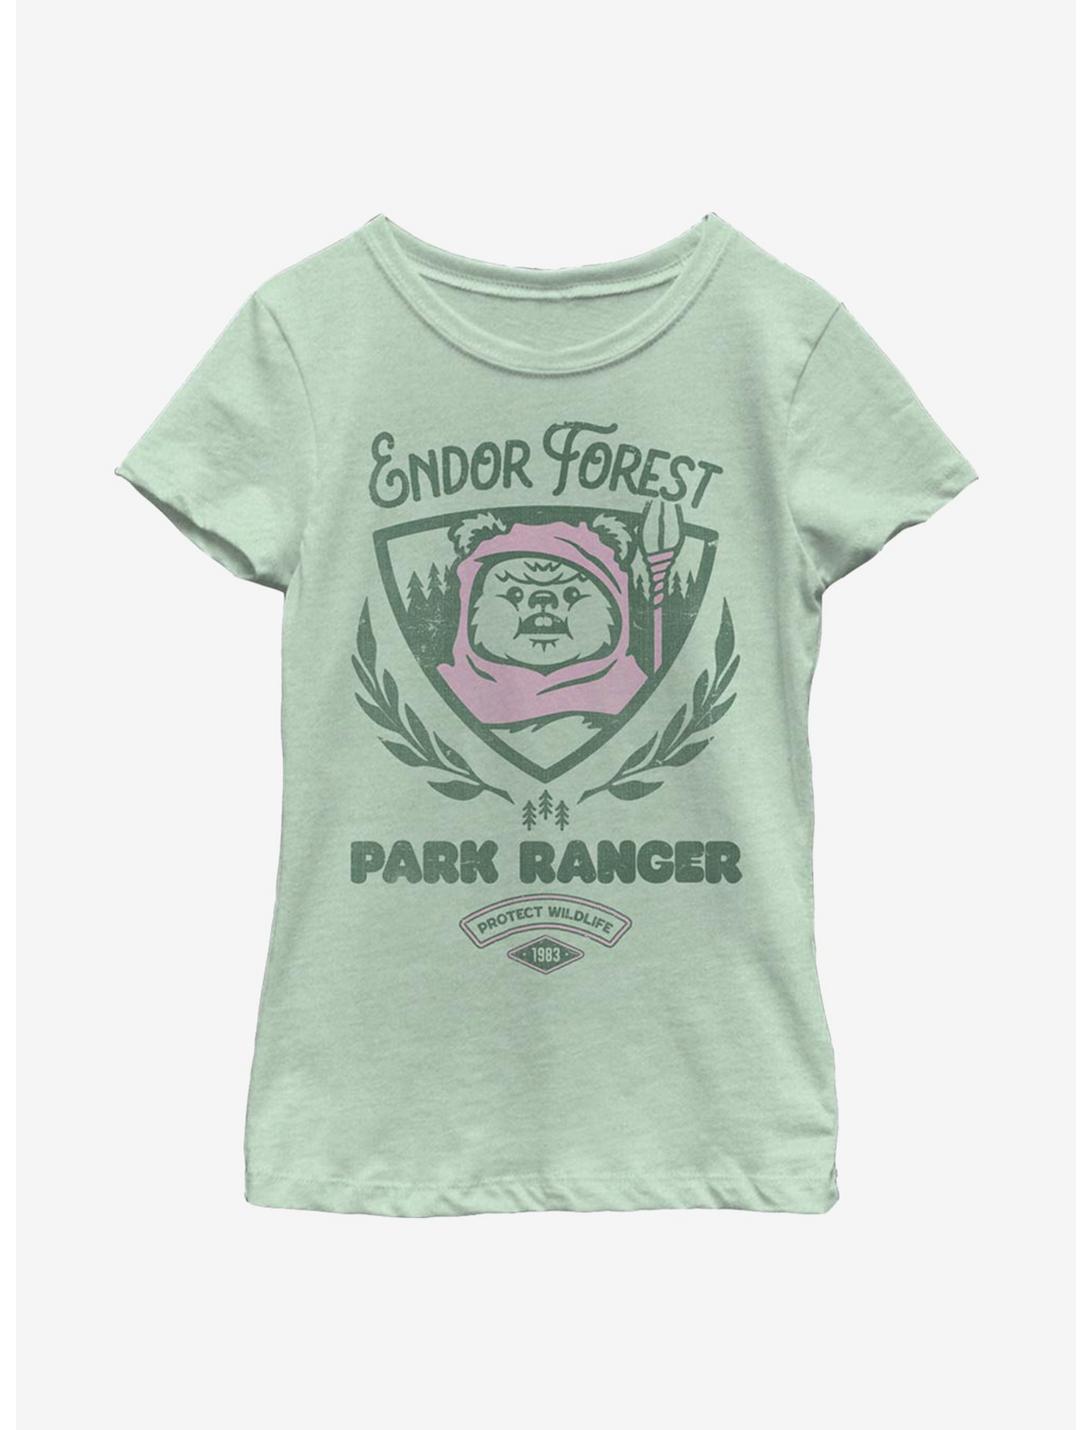 Star Wars Endor Forest Park Ranger Youth Girls T-Shirt, MINT, hi-res